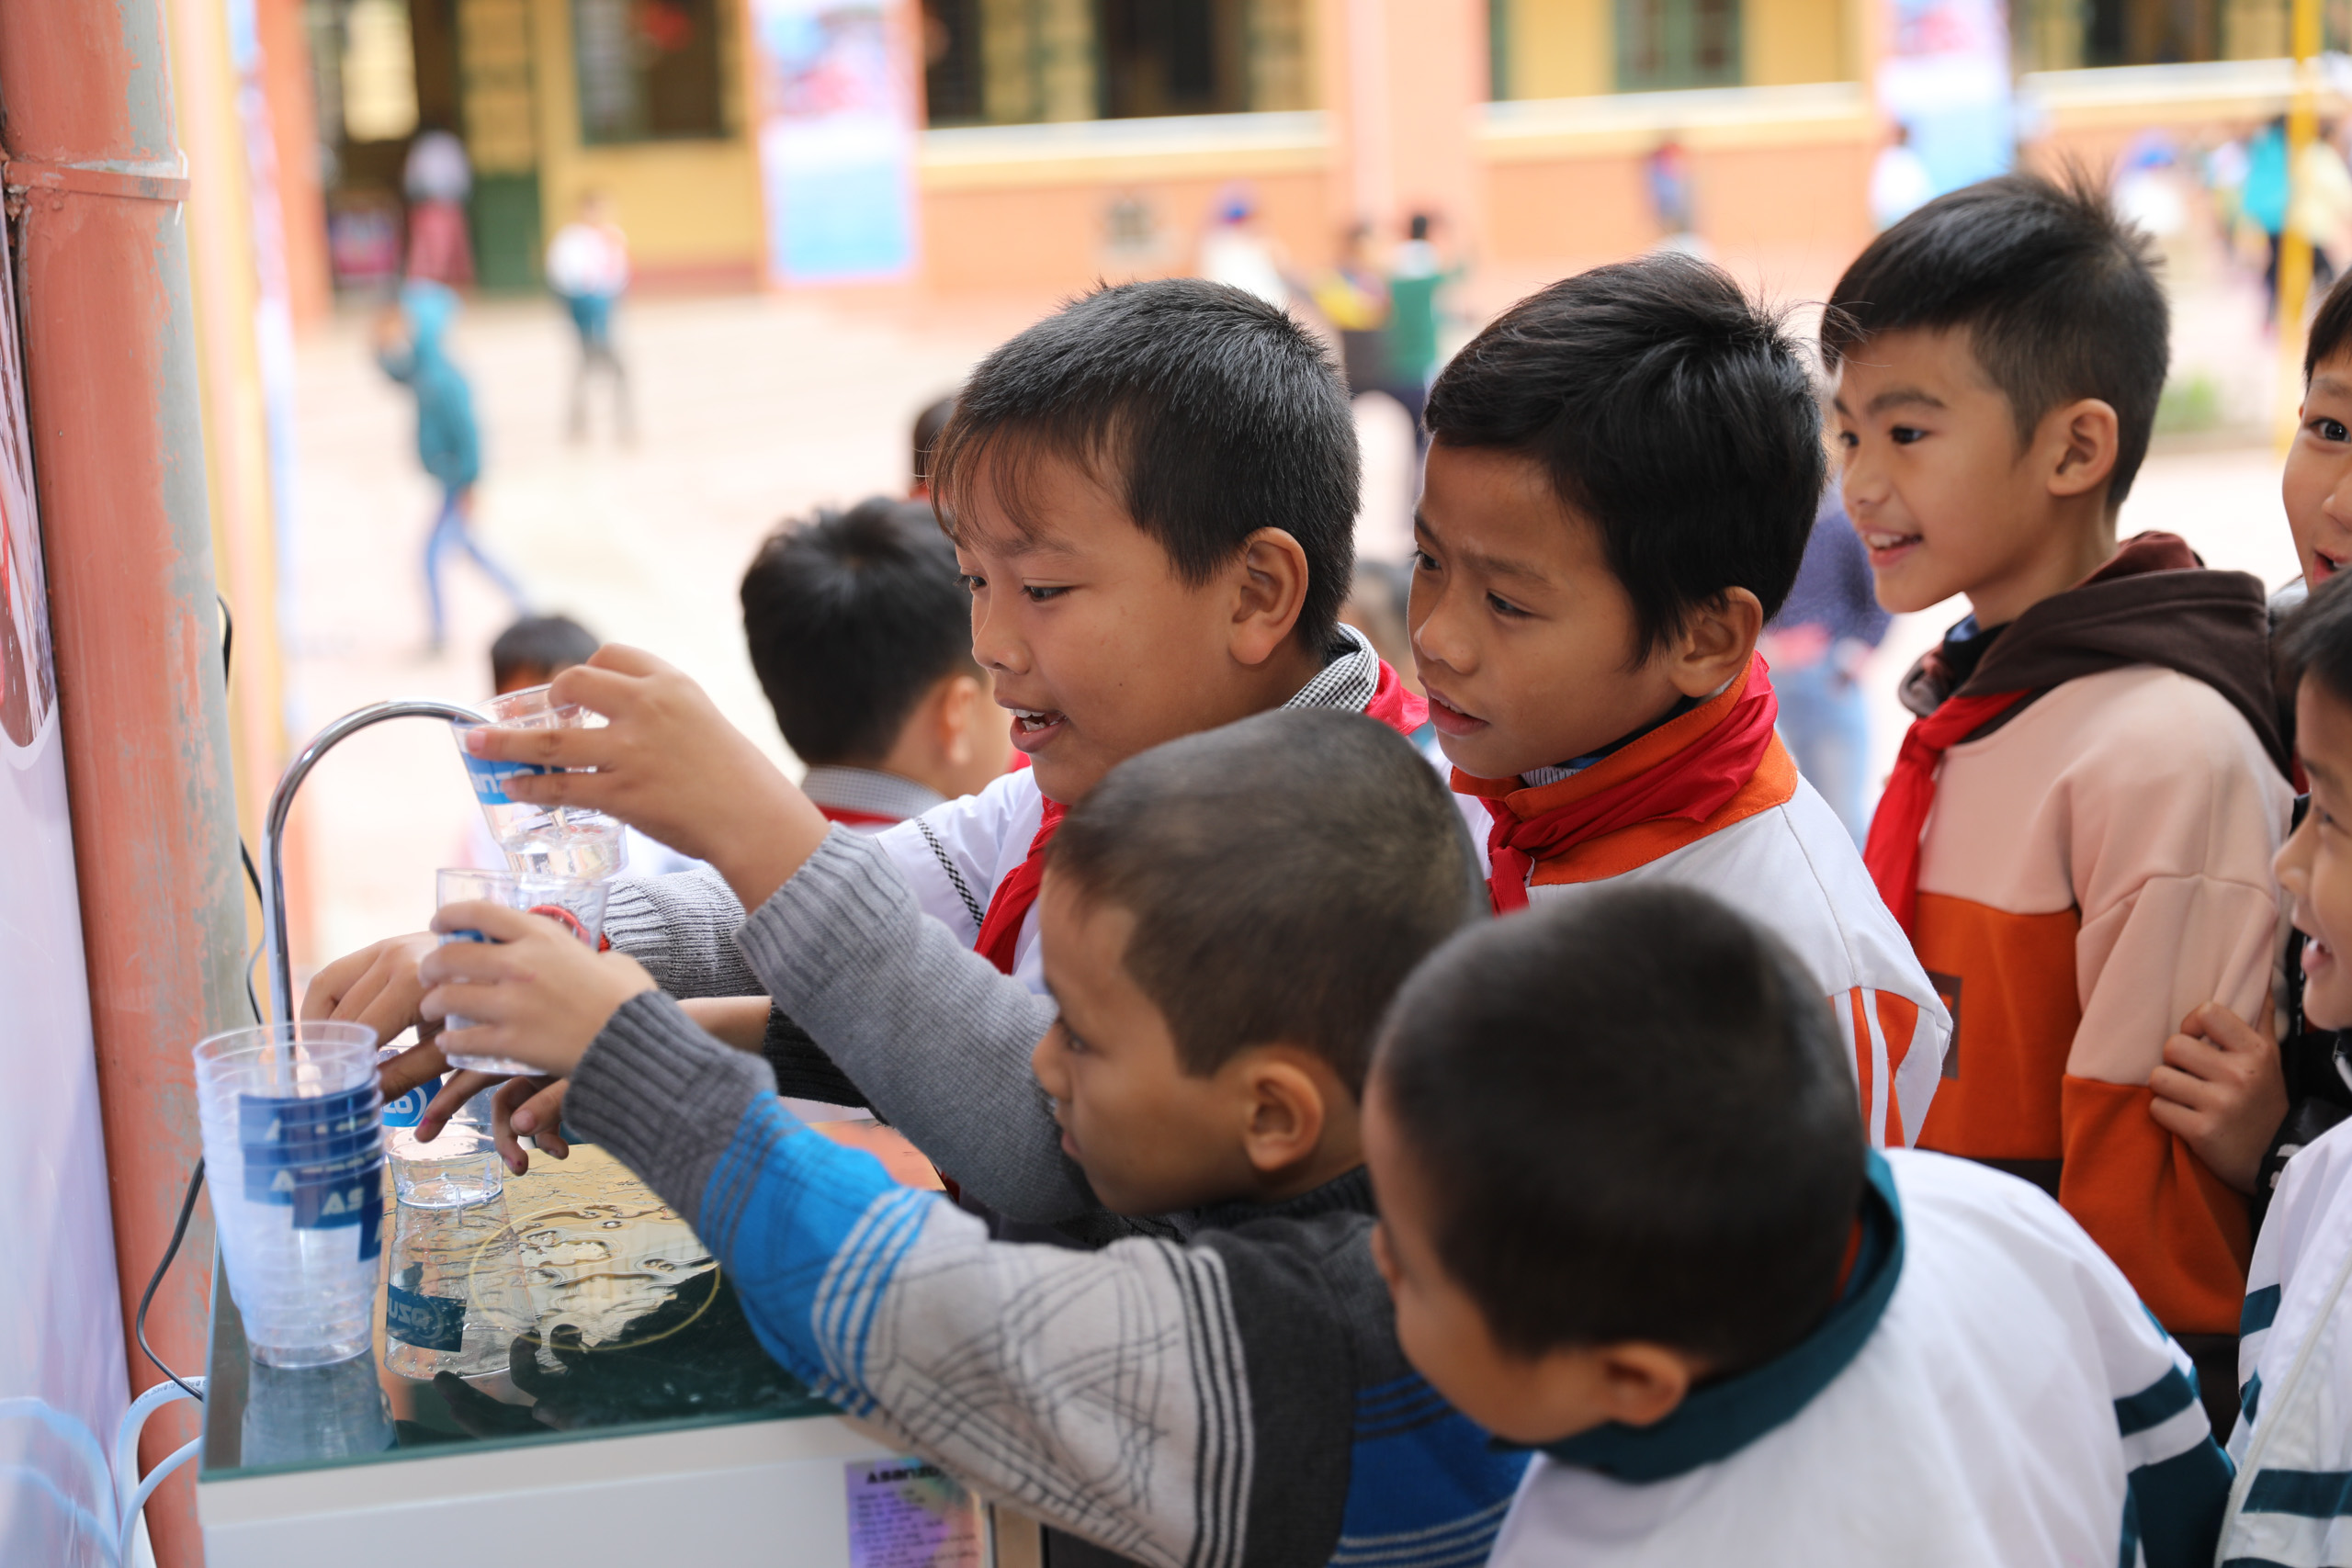 Lễ trao tặng máy lọc nước cho các trường học trên địa bàn huyện Đông Anh, thành phố Hà Nội.